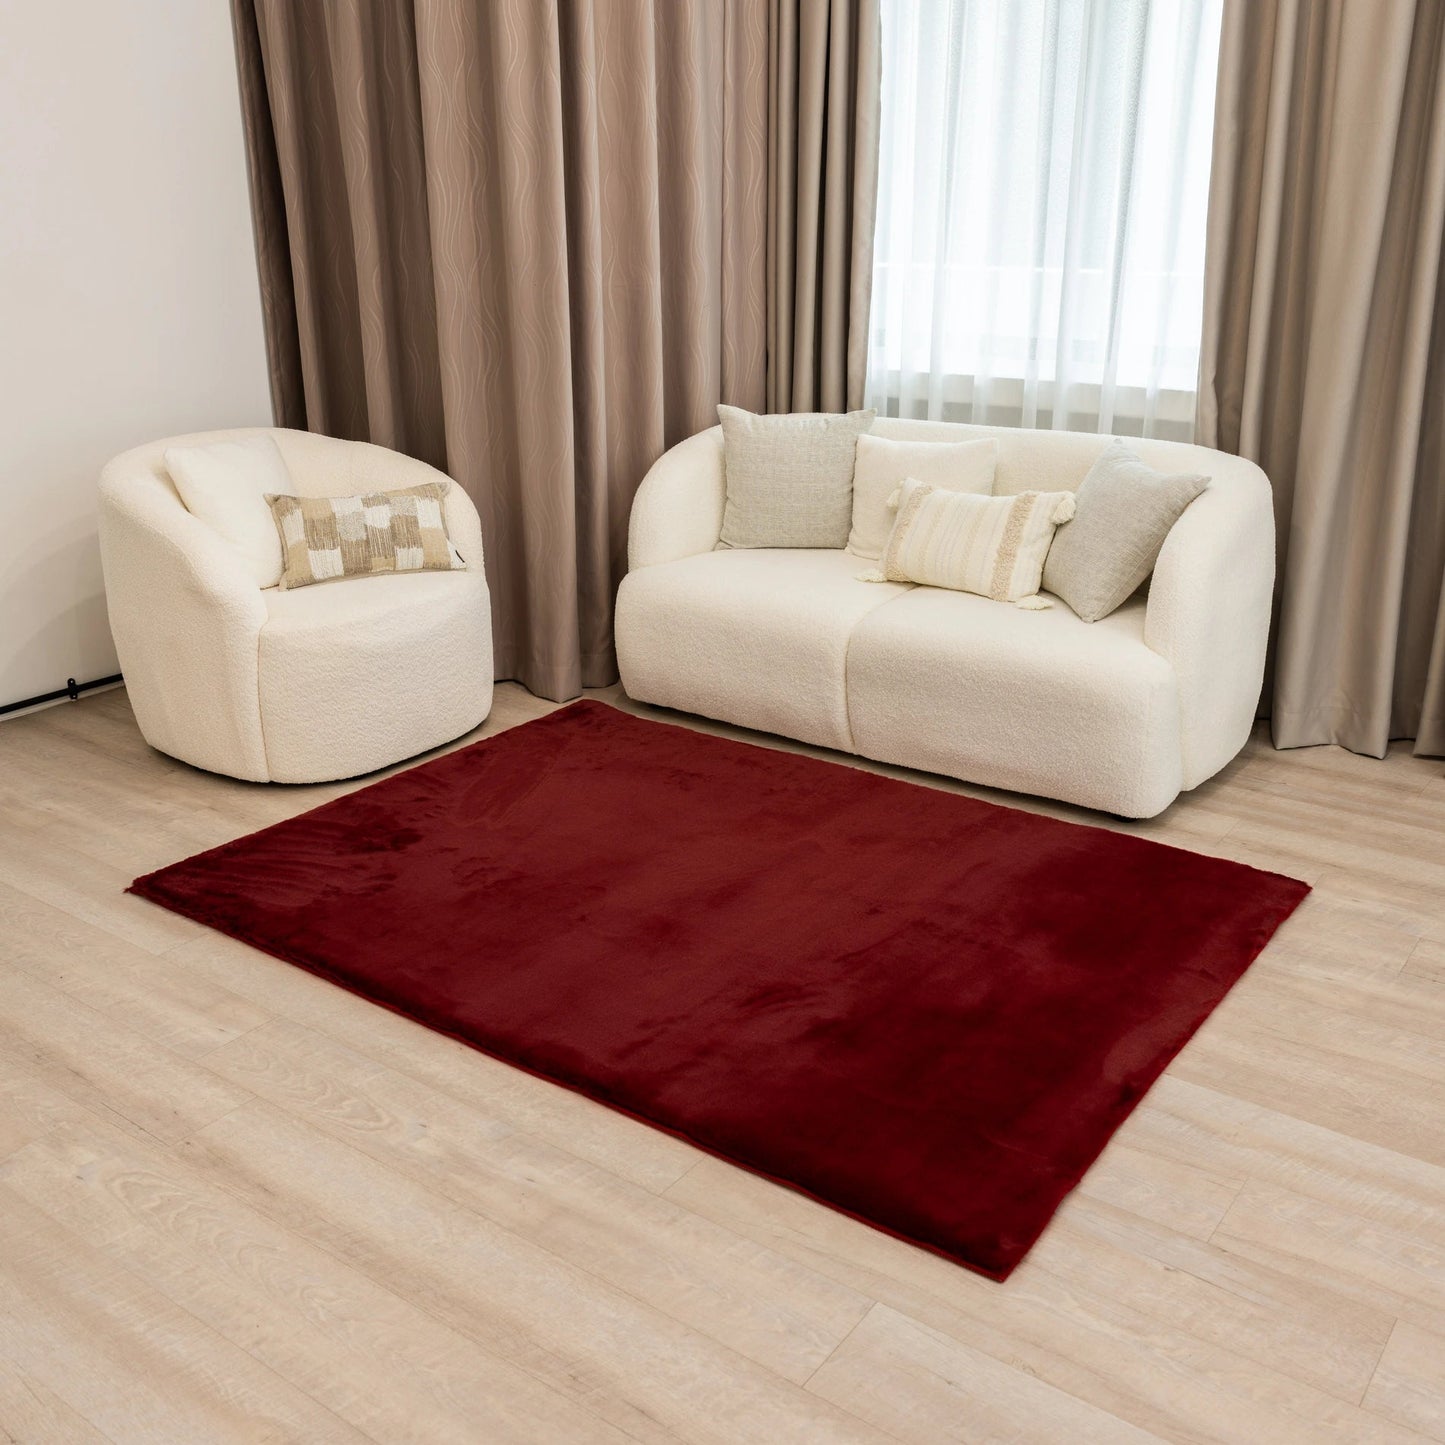 Cherry Maroon Cloud Fur Carpet - The Carpetier™